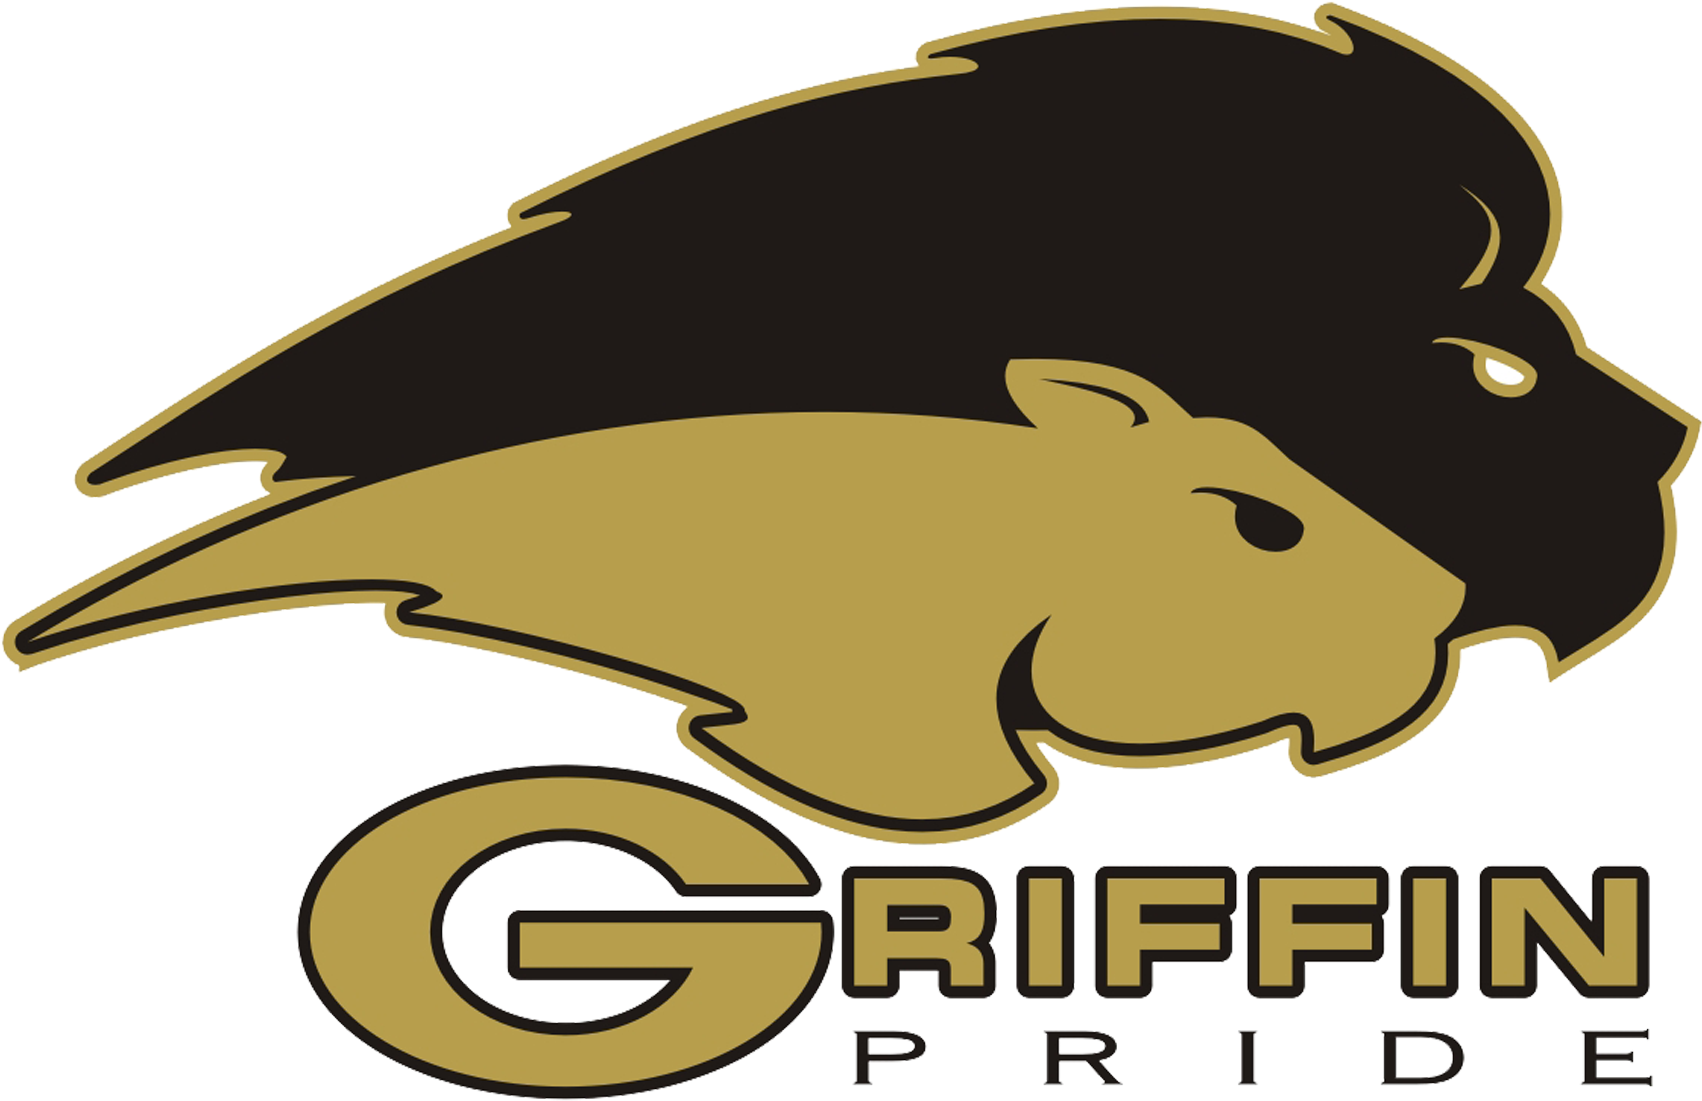 Griffin Middle School - Griffin Middle School (1758x1130)